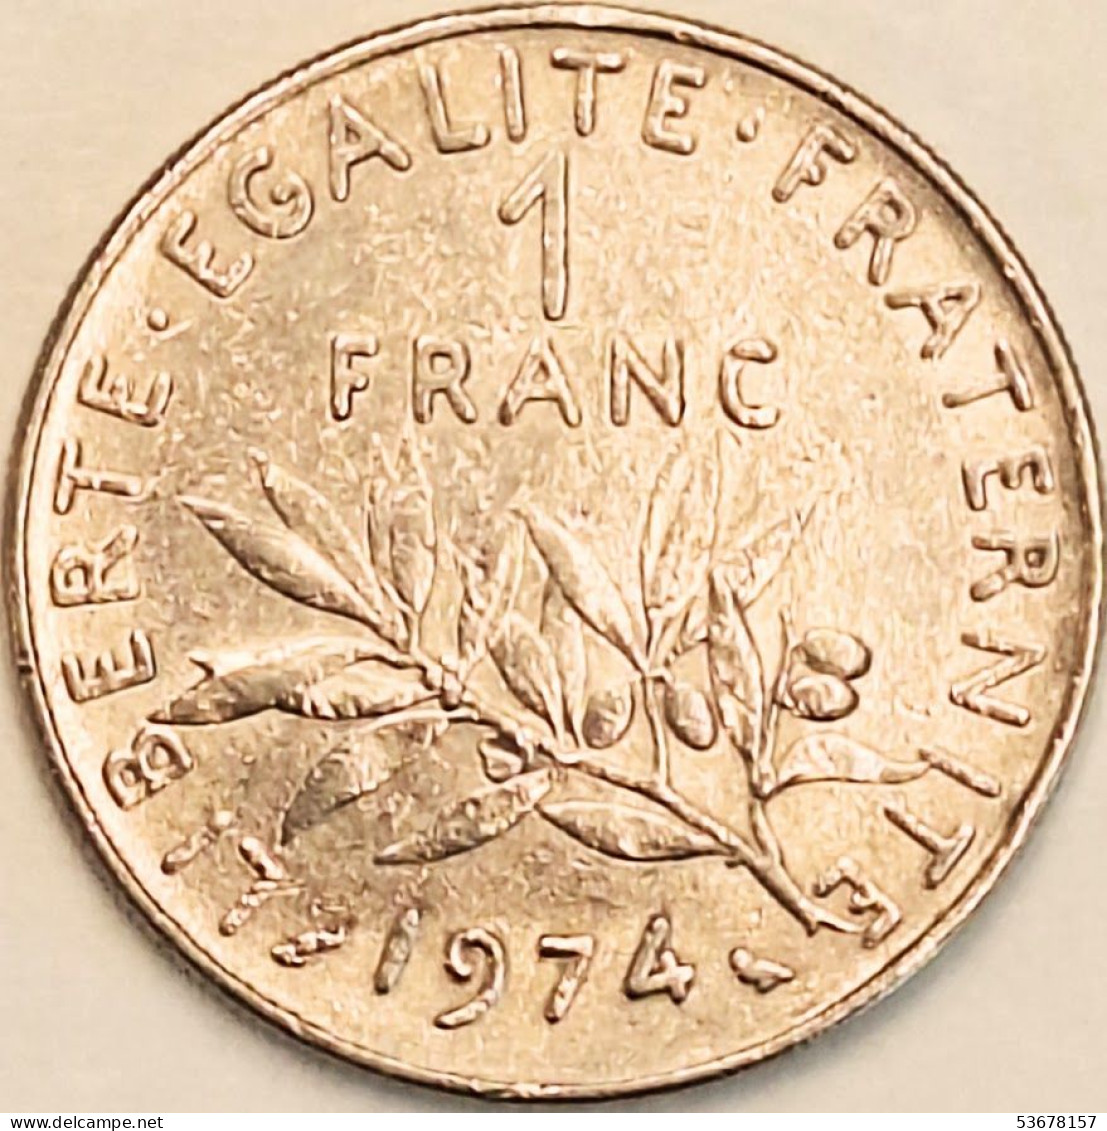 France - Franc 1974, KM# 925.1 (#4318) - 1 Franc